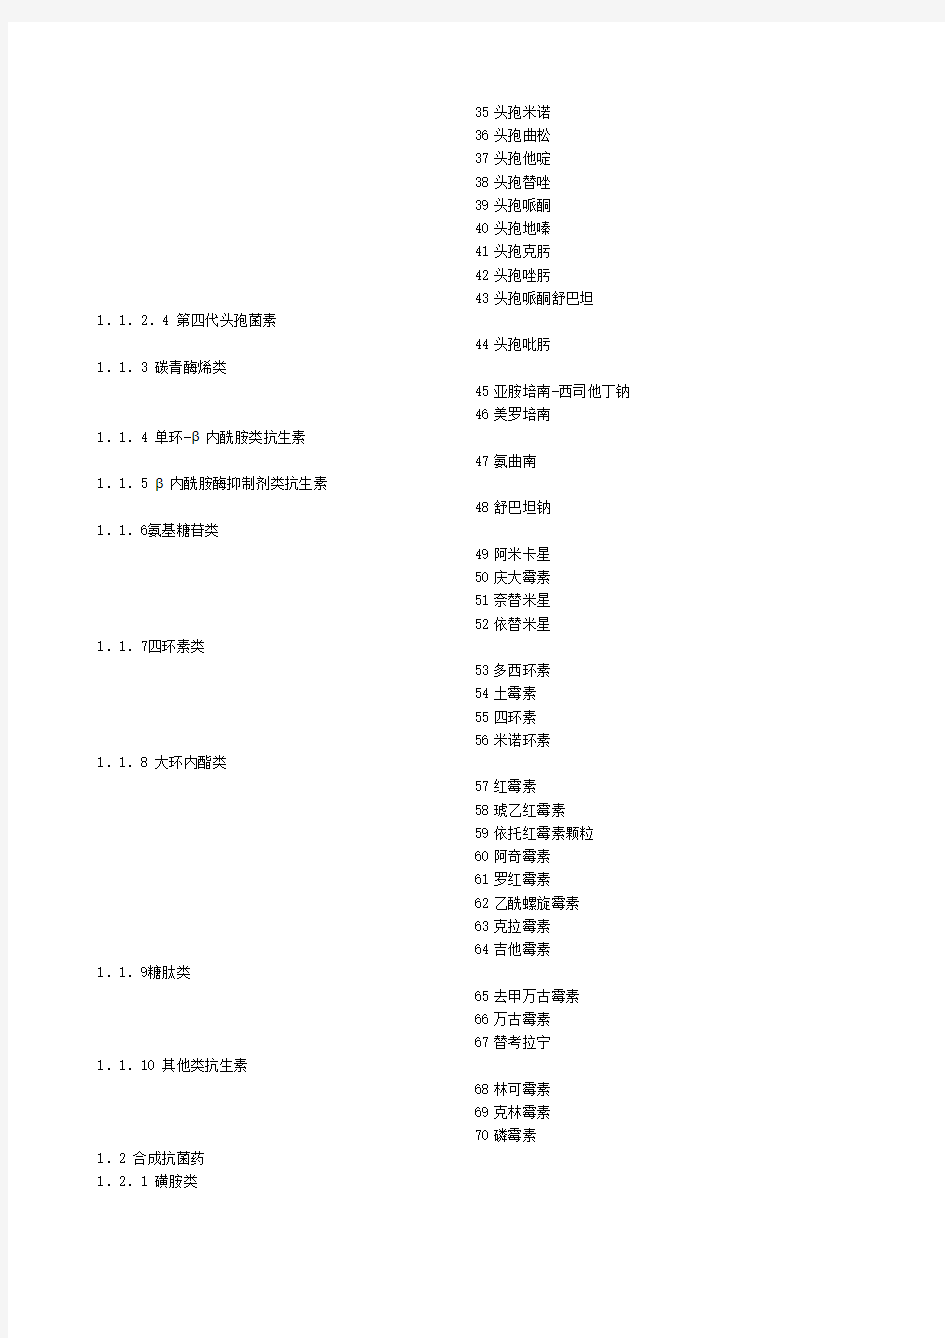 2009年版黑龙江新农合药品目录(西药)